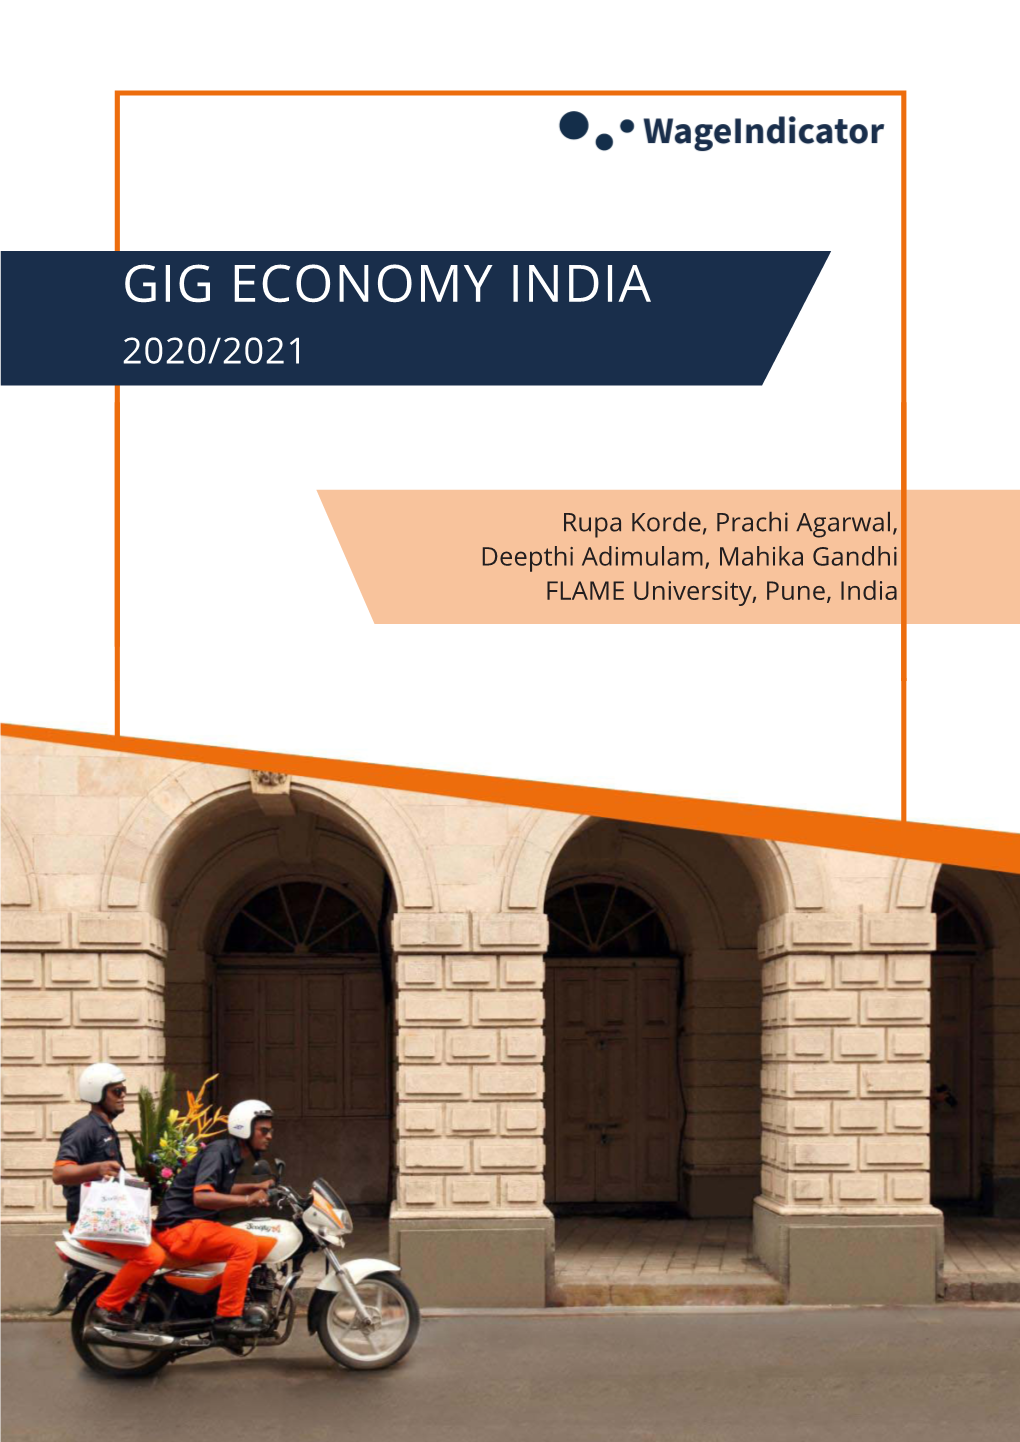 Gig Economy India 2020/2021